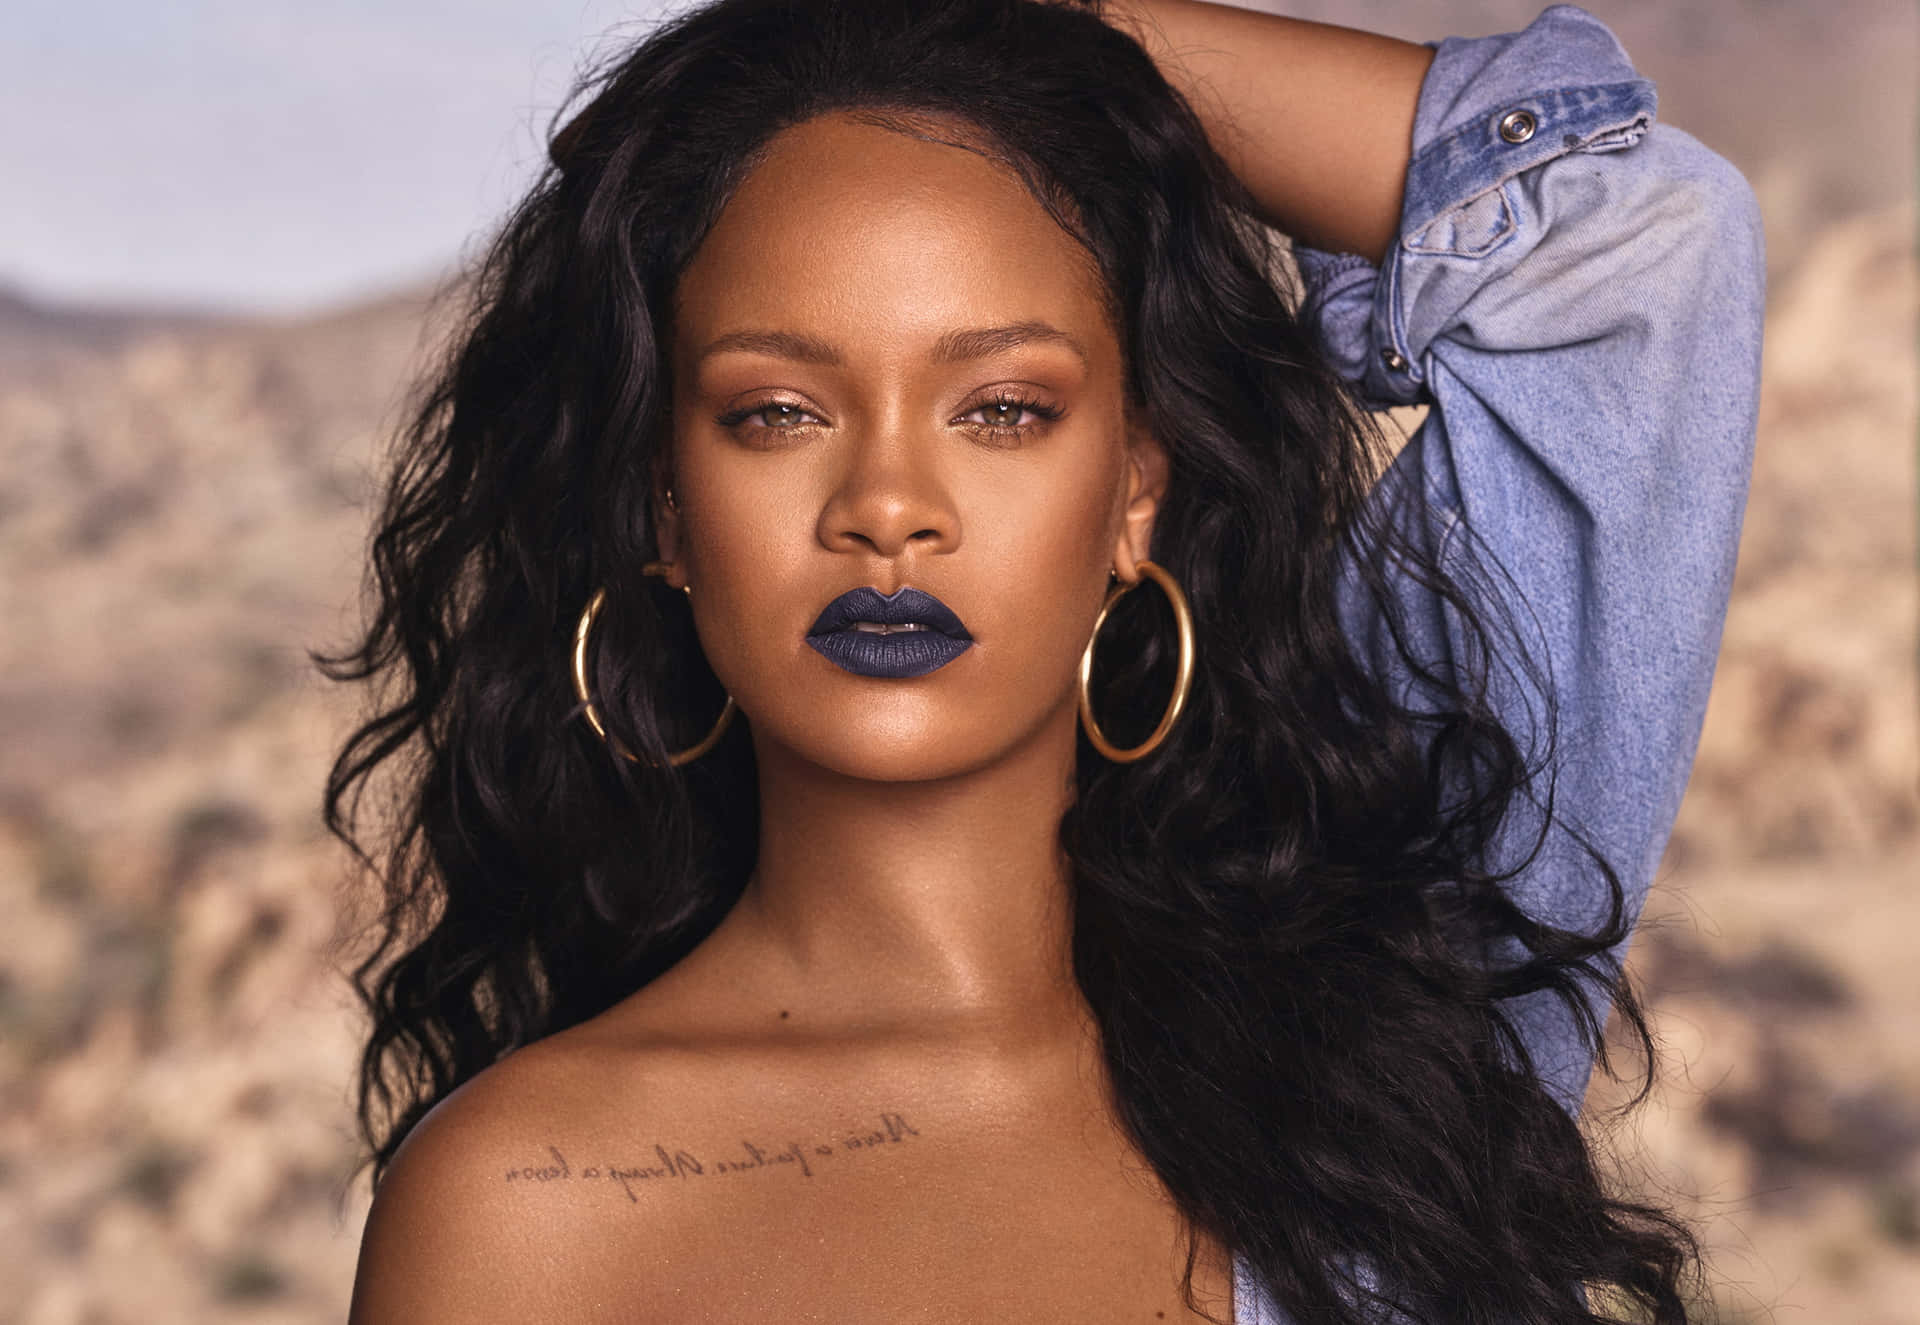 Derpop-star Rihanna Verzaubert Ihre Fans Mit Ihrer Beeindruckenden Schönheit Und Fesselnden Anmut.